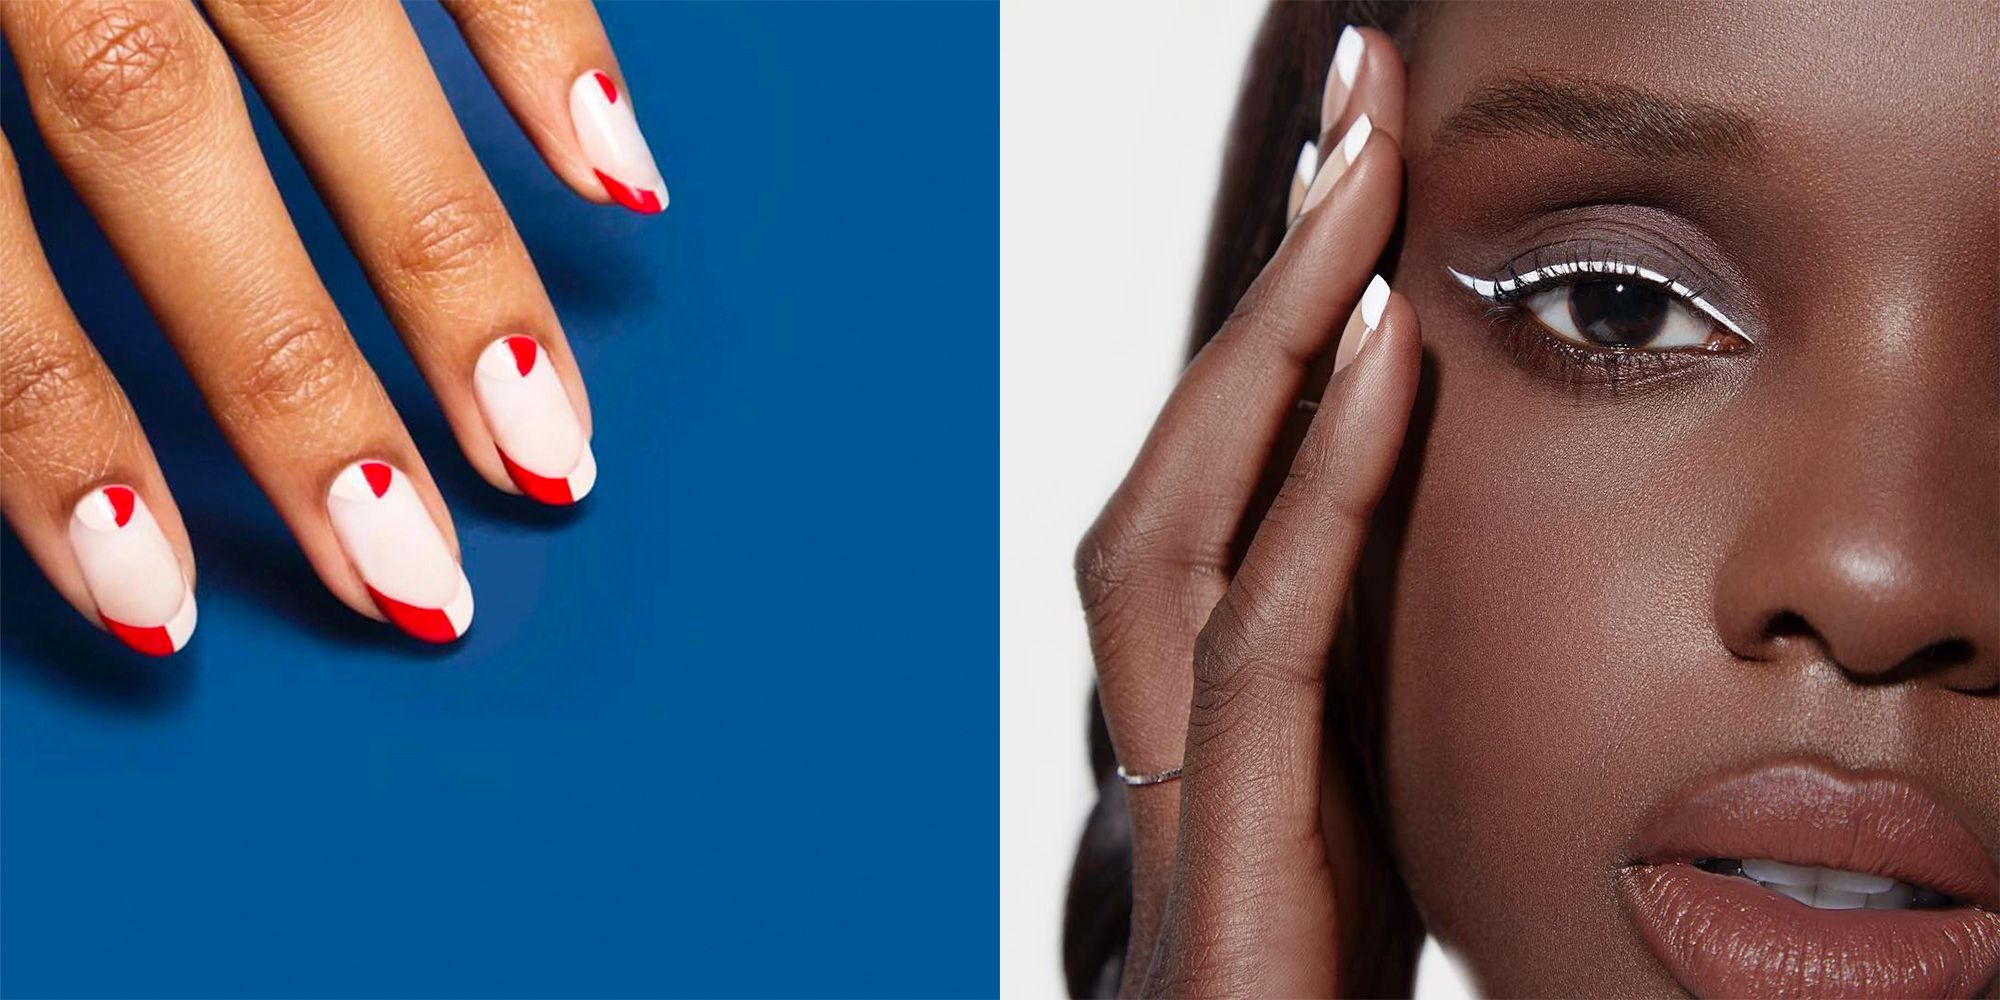 bonitas ideas de uñas francesitas con detalles, ideas de diseños de uñas francesas decoradas que estarán en tendencia en 2018, uñas largas ovaladas con detalles en rojo